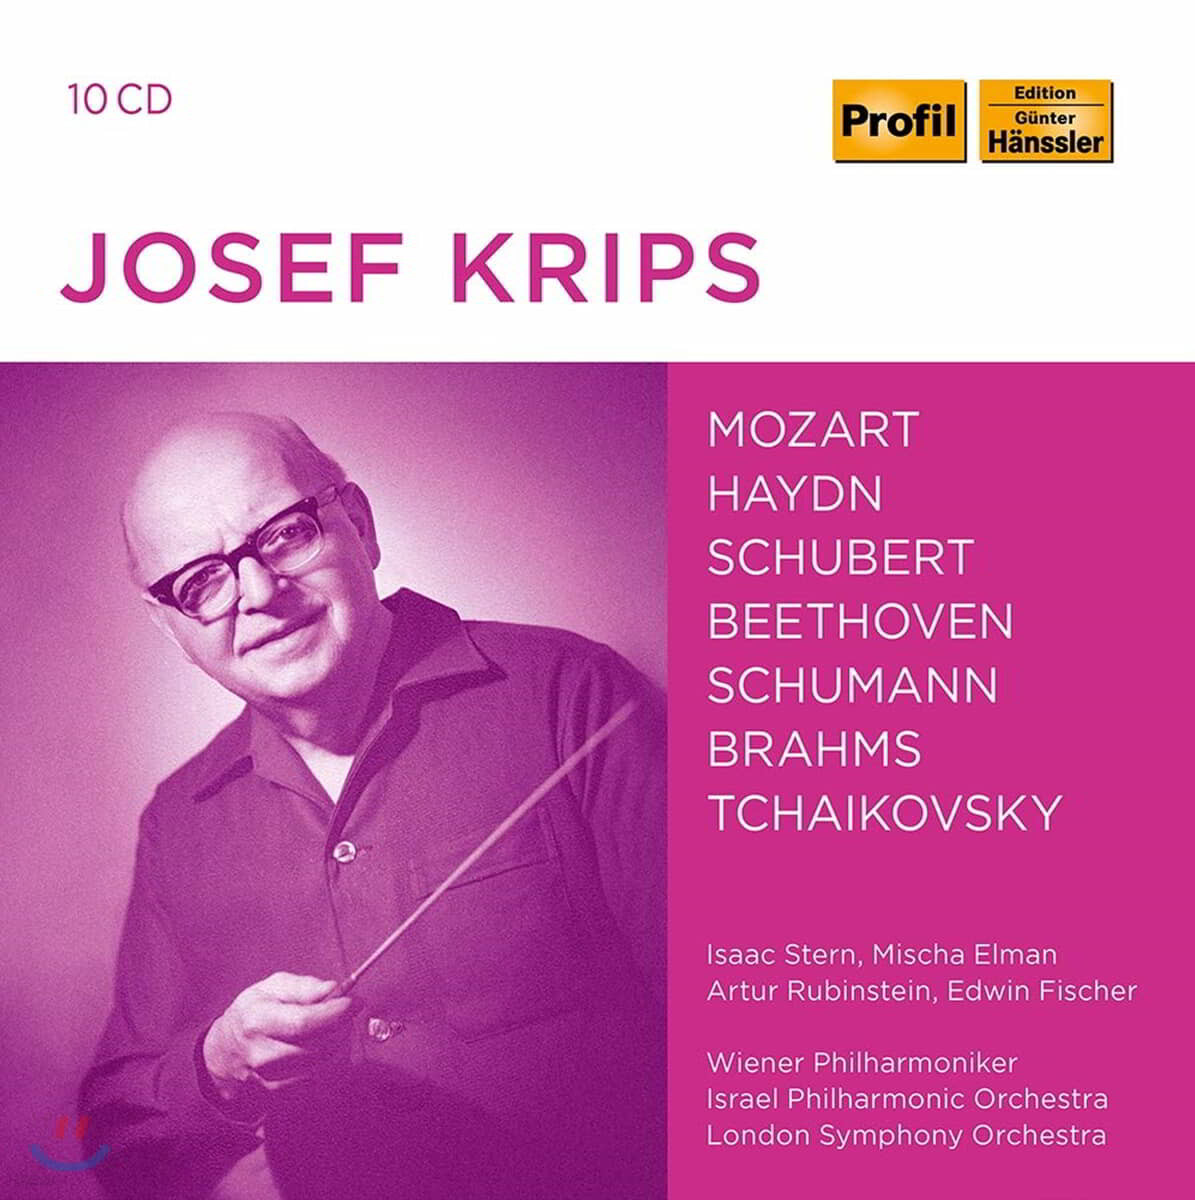 요제프 크립스 지휘 모음집 (Josef Krips counducts Mozart / Haydn / Beethoven / Schubert / Tchaikovsky etc)